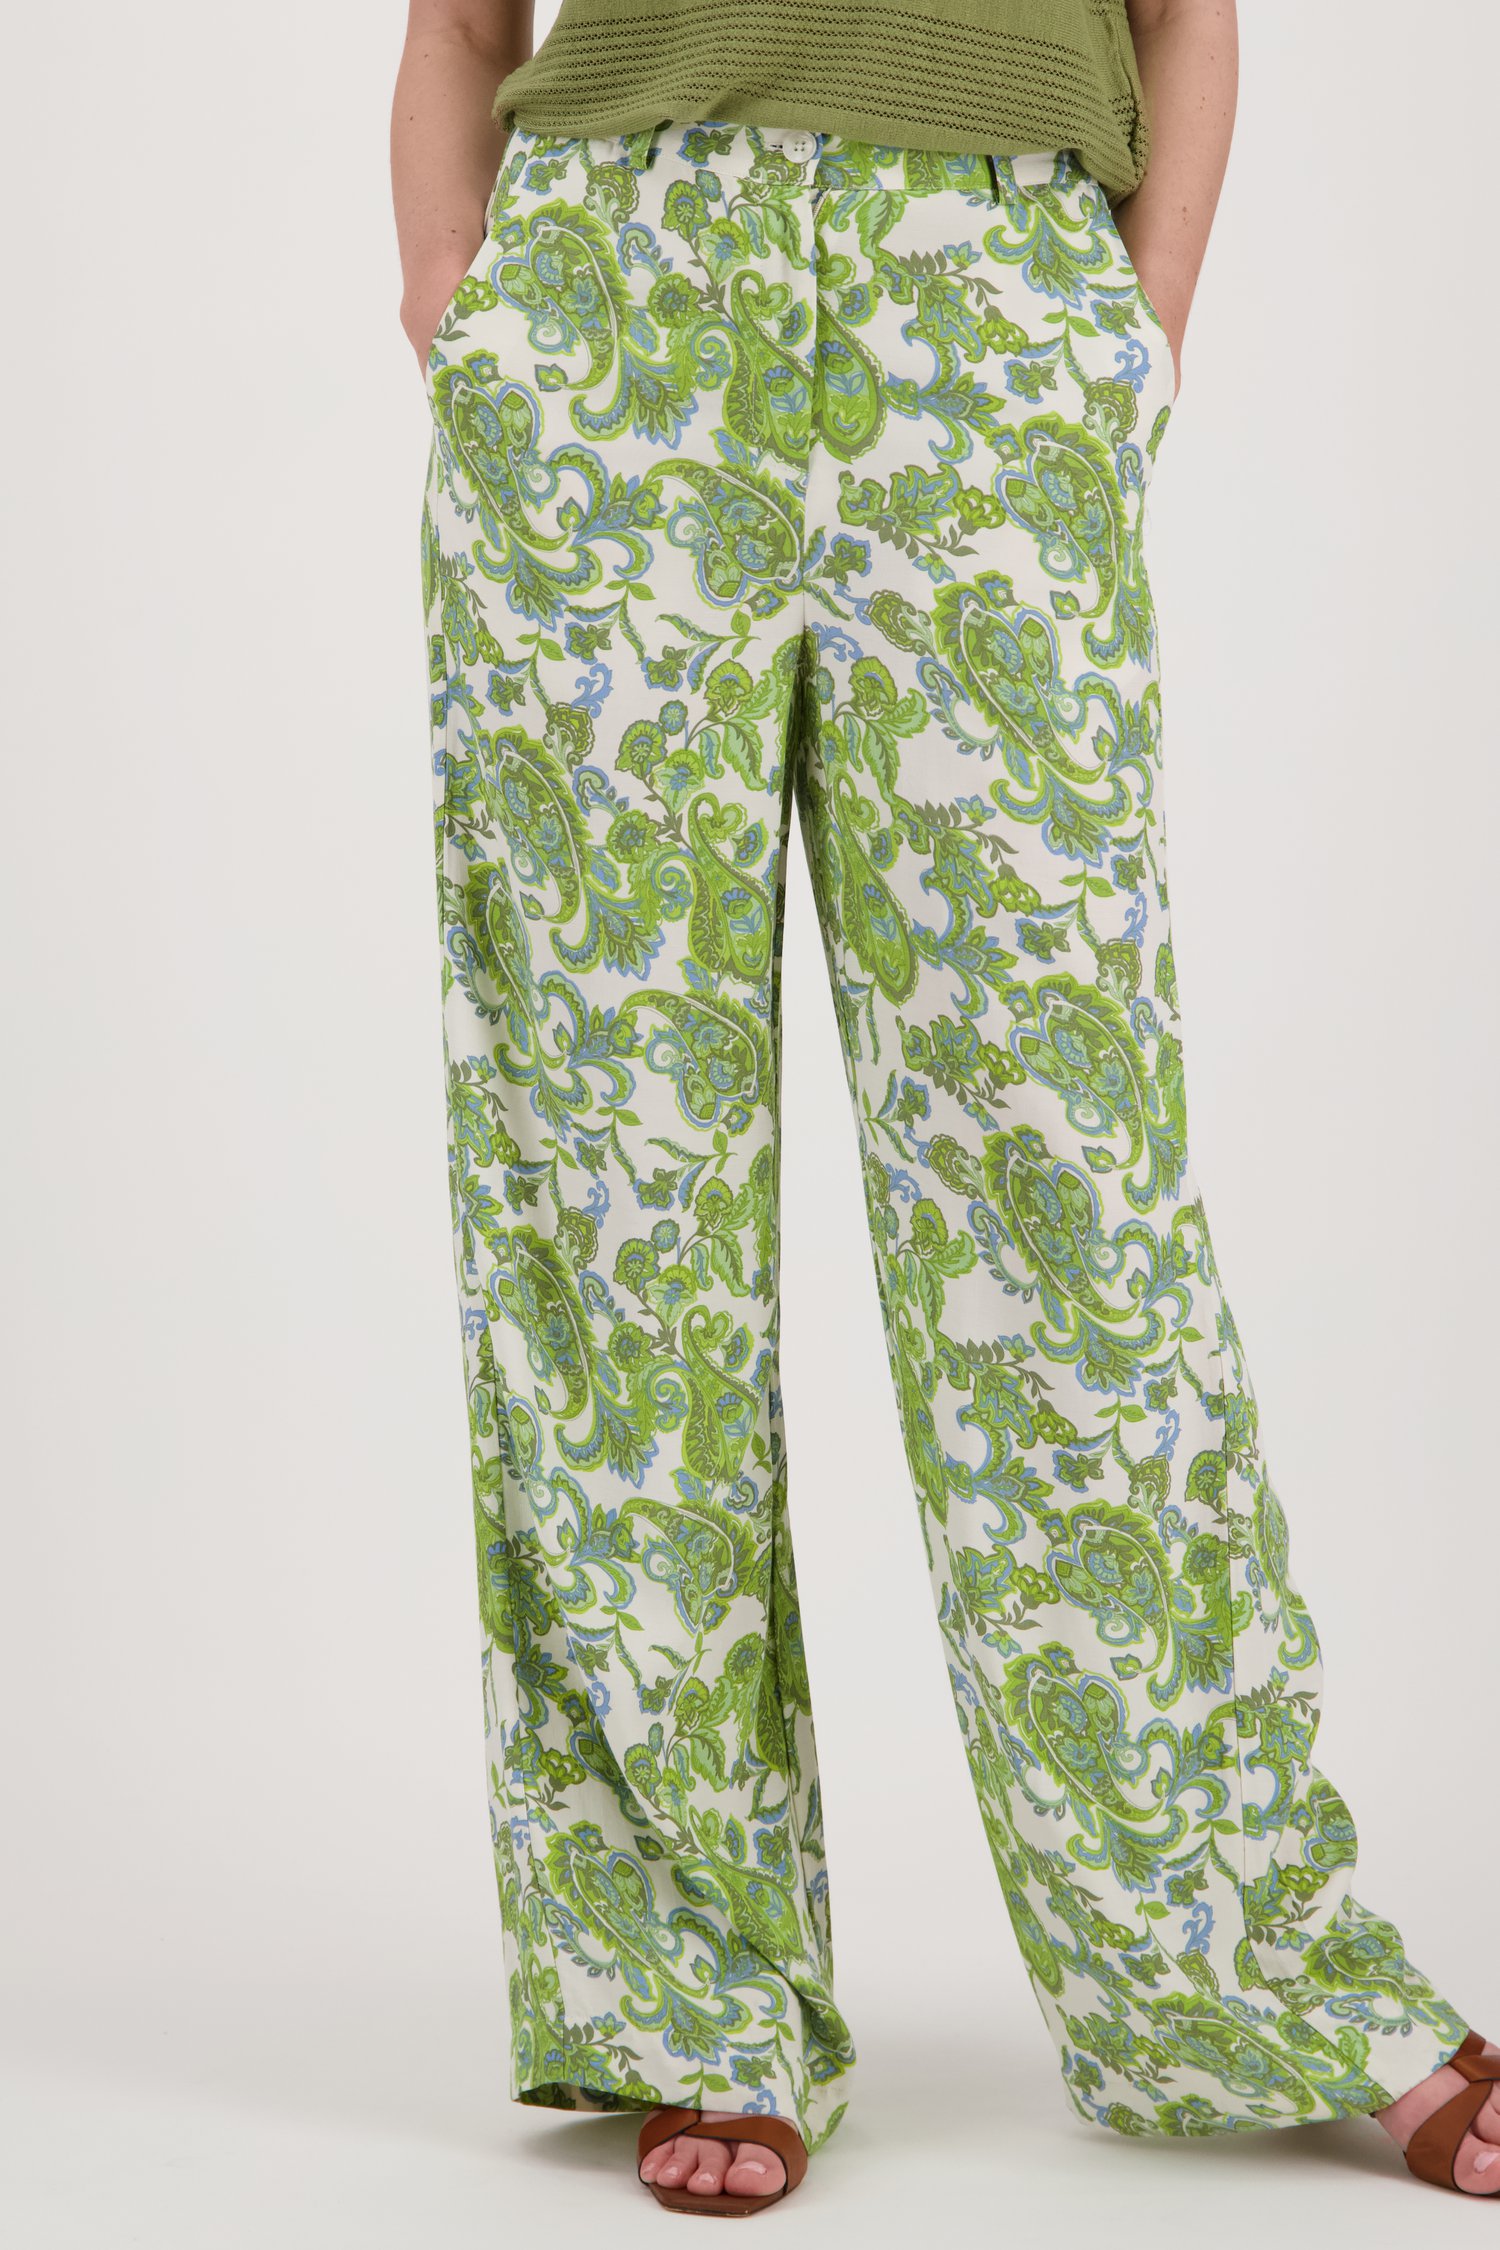 terugtrekken Jumping jack tapijt Wijde broek met groen-blauwe paisley print van More & More | 9868839 | e5